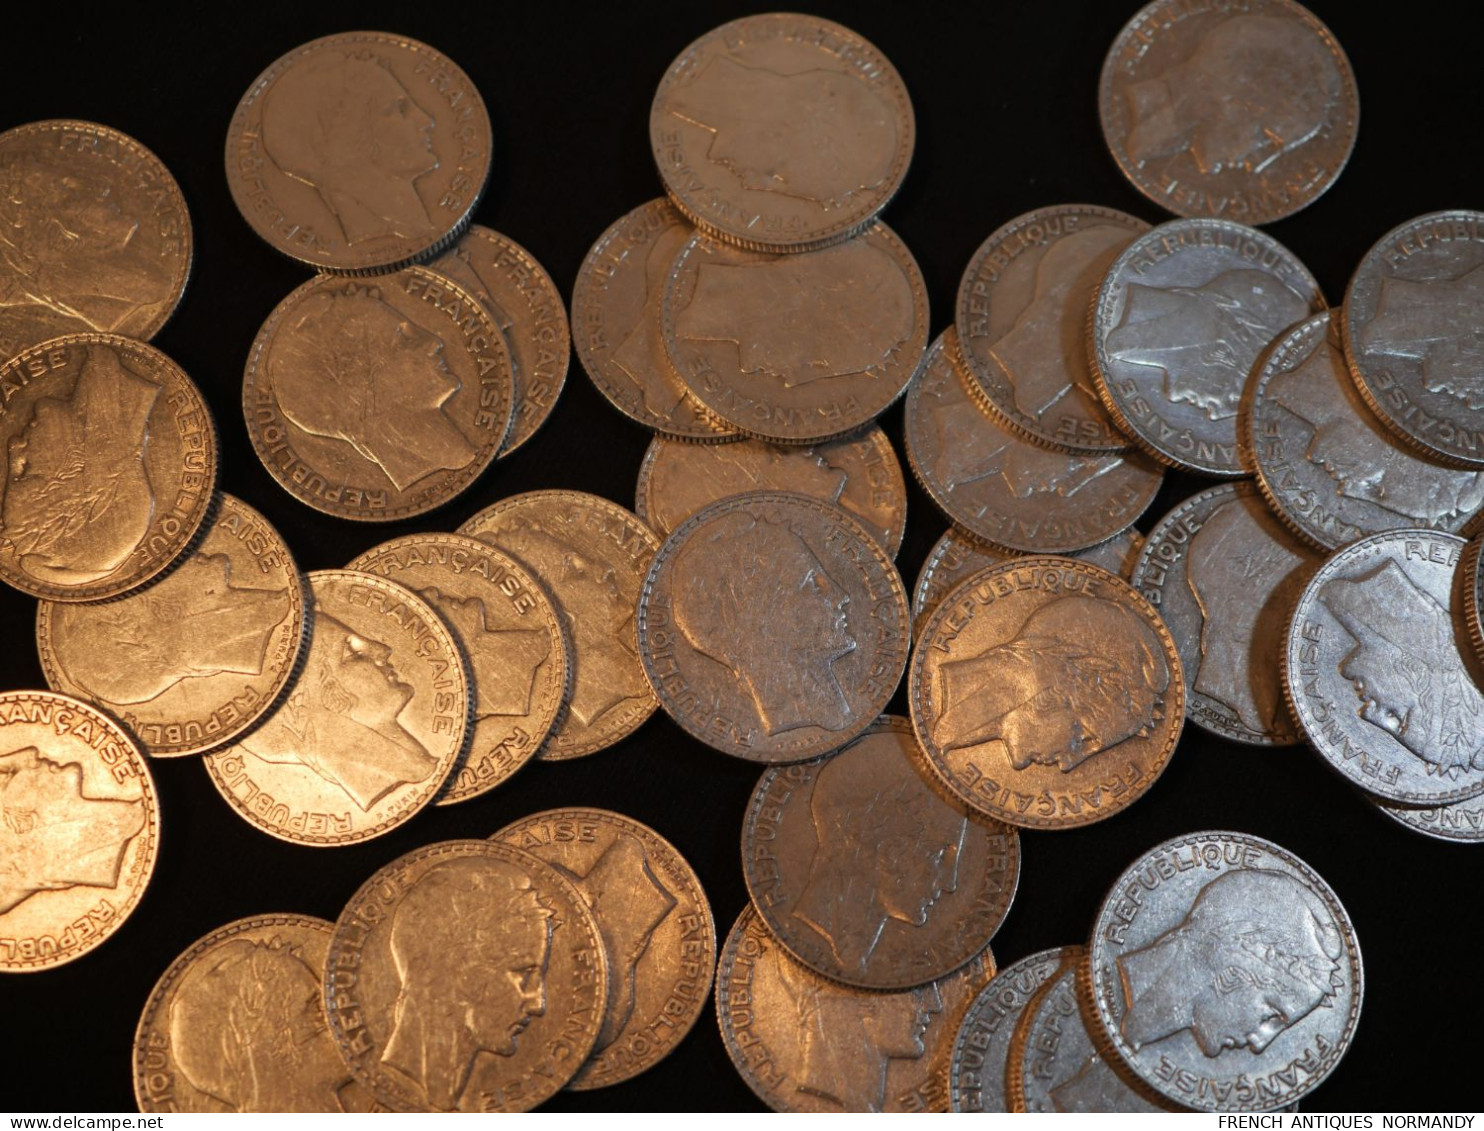 Important lot de 126 pièces de monnaie française en argent 10 FRANCS TURIN - années 30 1,254 kg ref JUL24TUR001